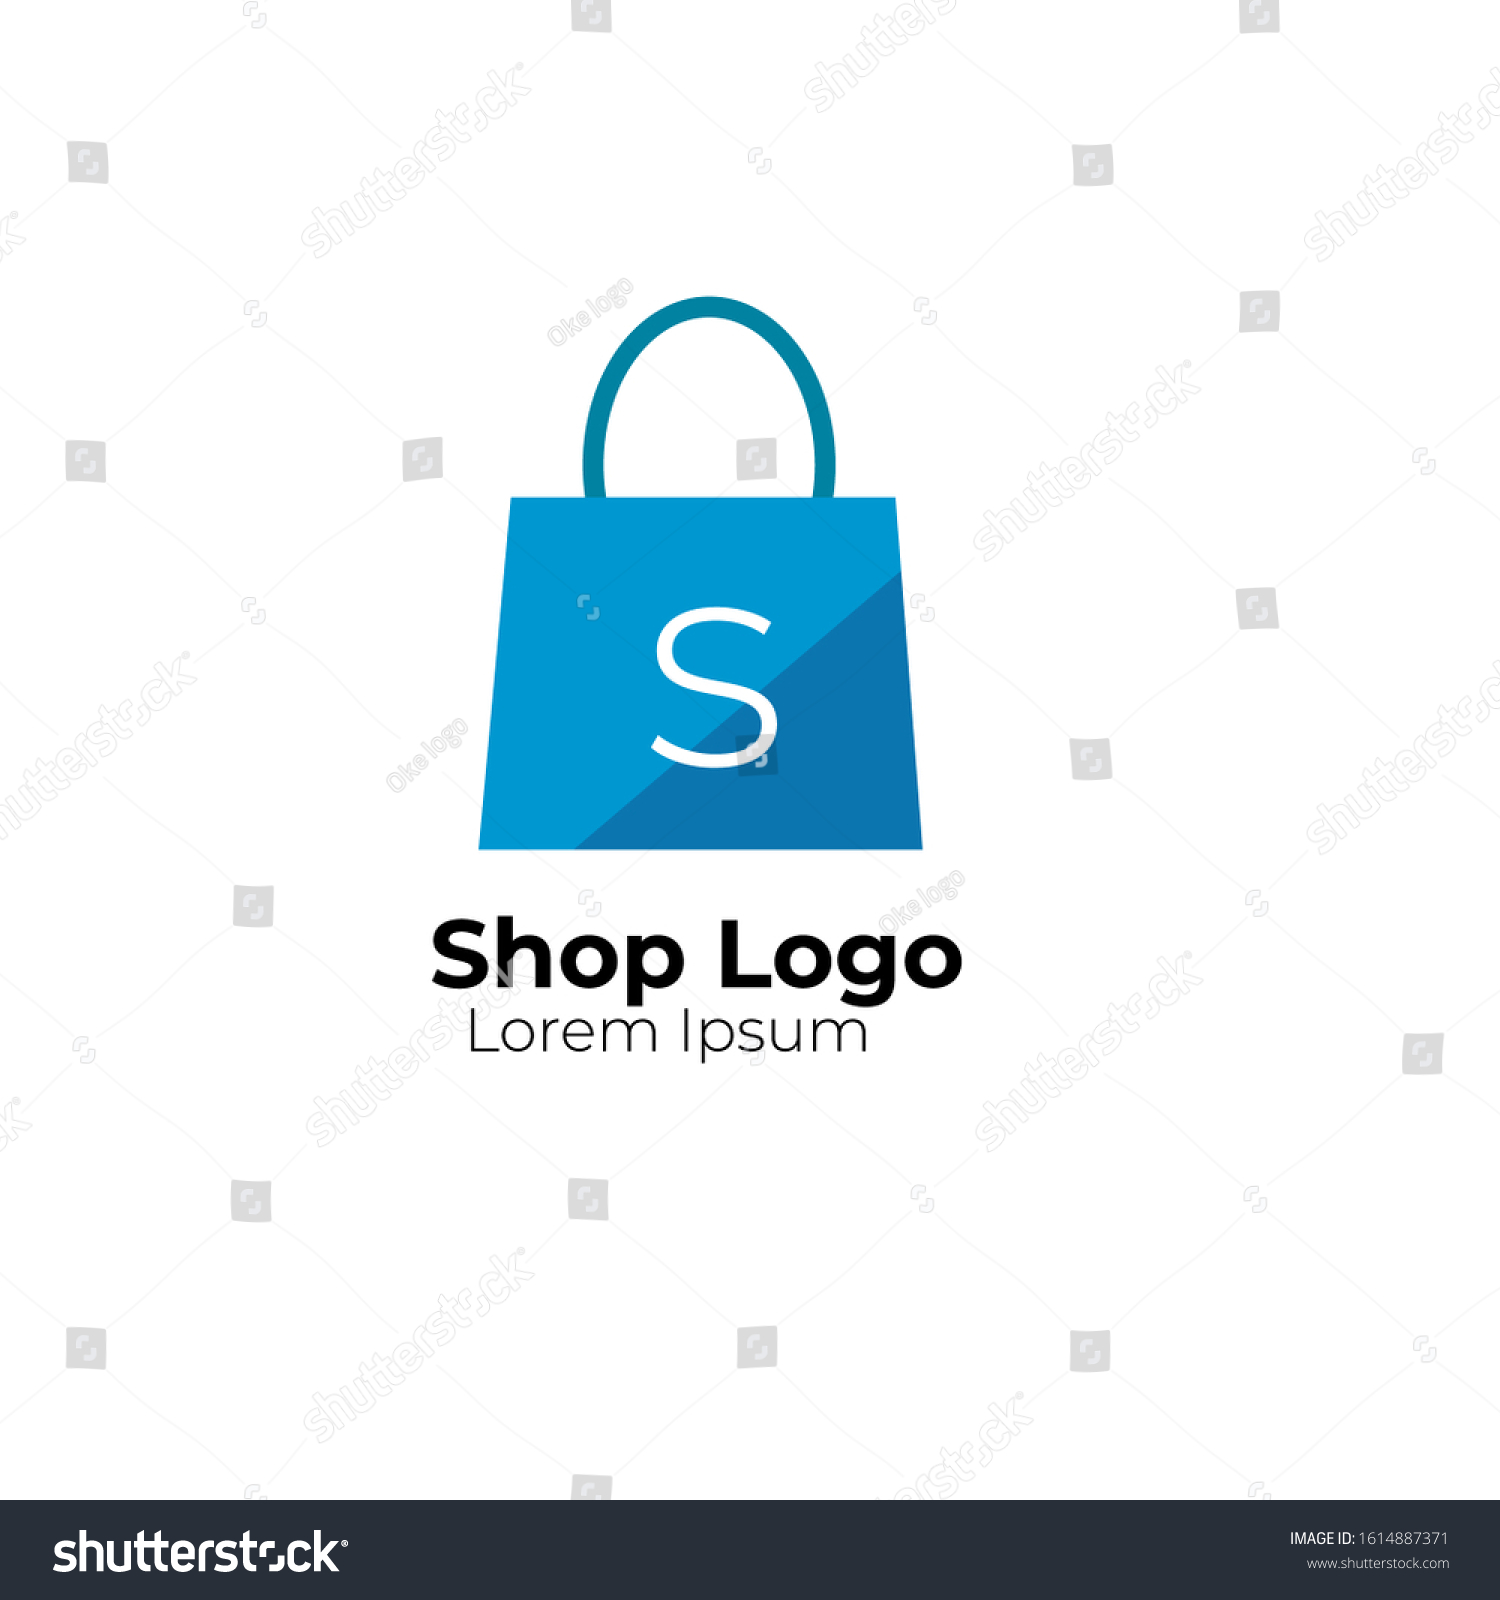 Shopping Bag Logo Design Vector Template Stock Vector (Royalty Free ...